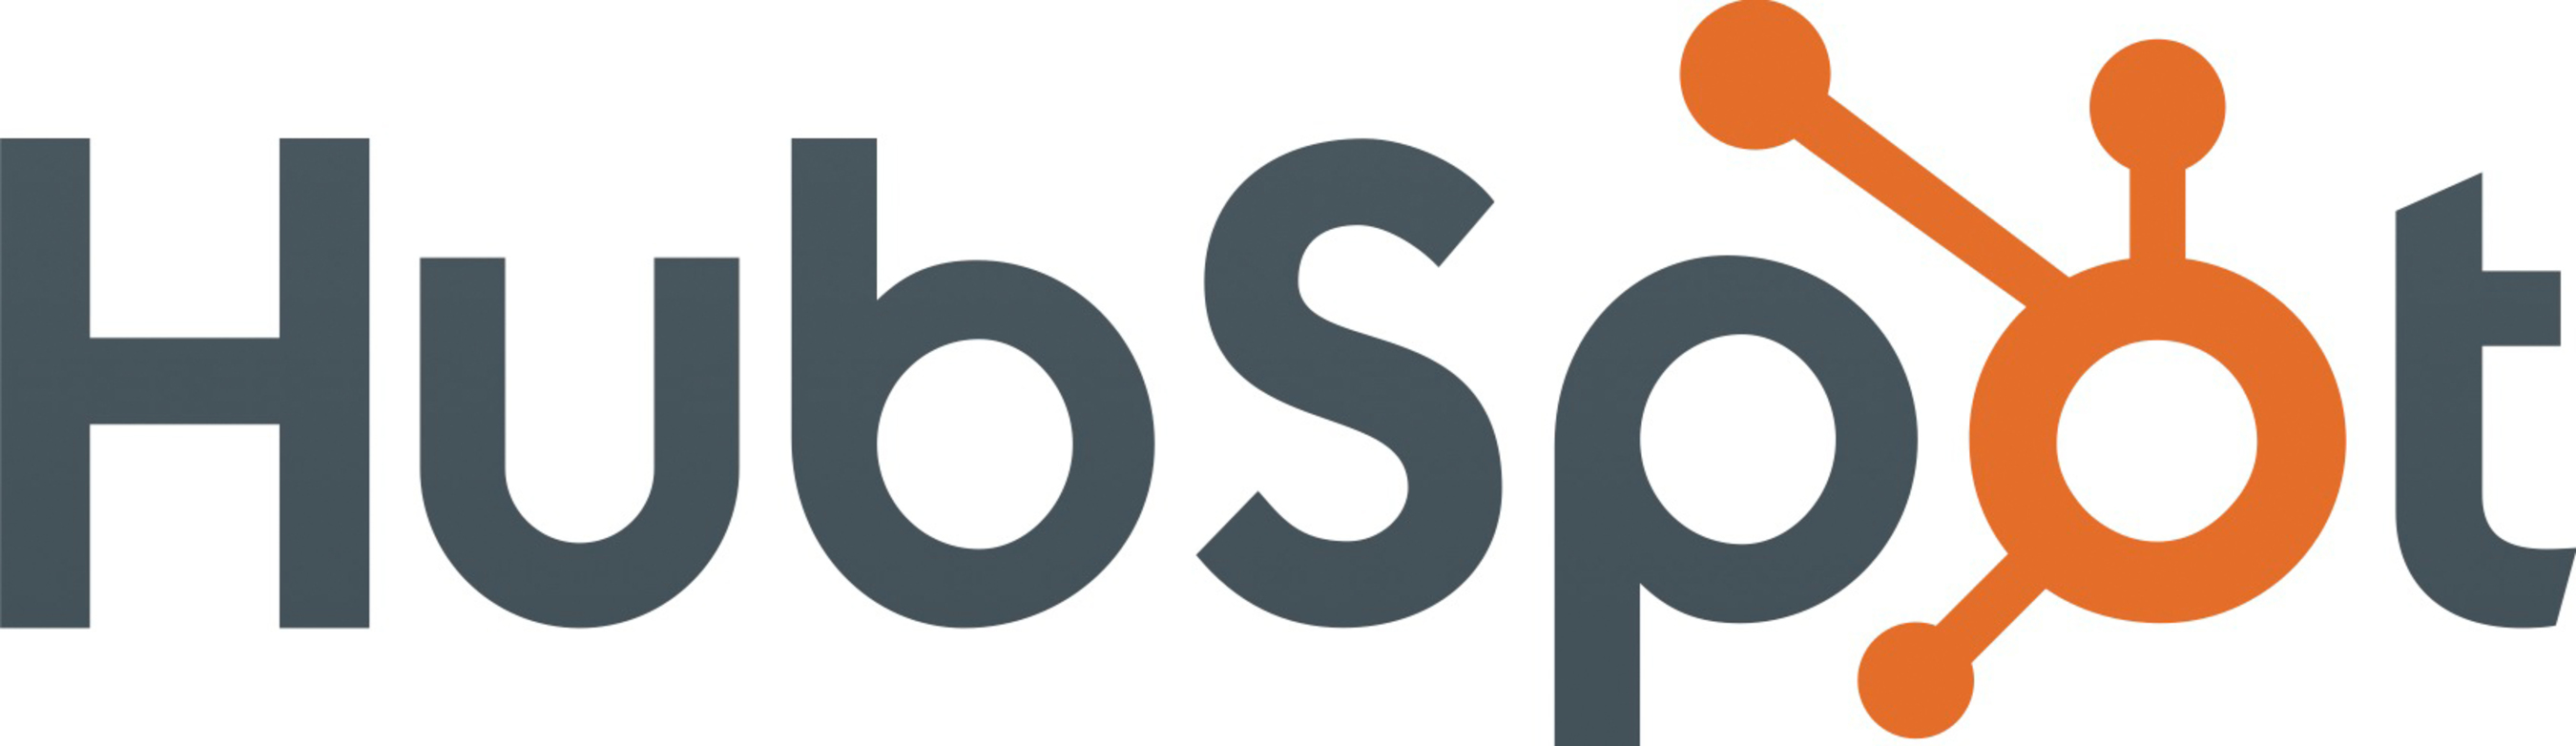 HubSpot, Inc. logo -  www.hubspot.com . (PRNewsFoto/HubSpot, Inc.) (PRNewsFoto/)